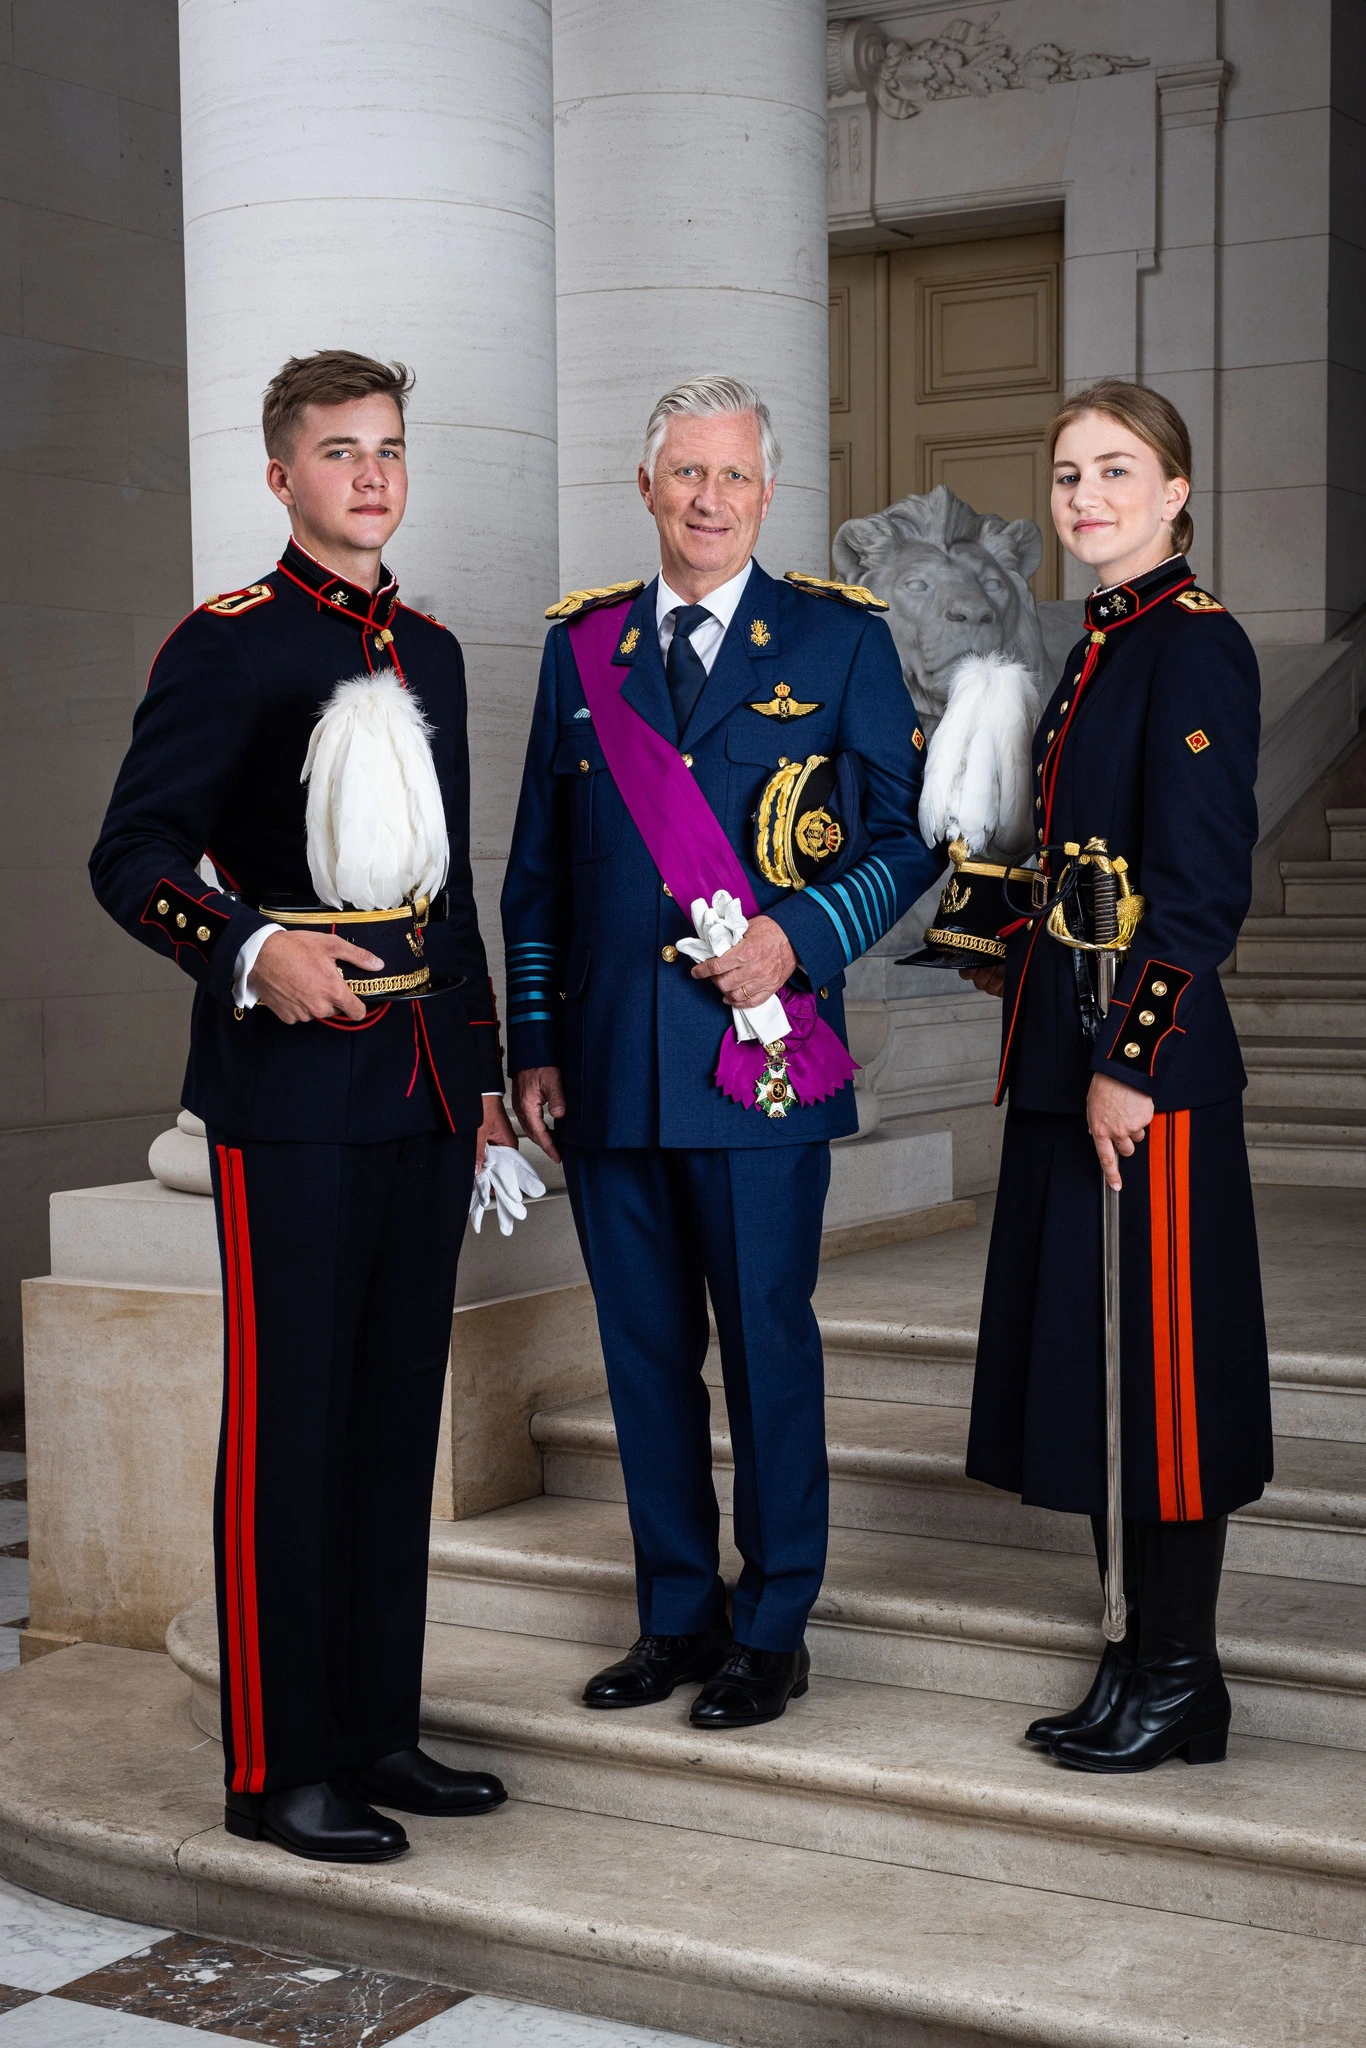 König Philippe mit Prinz Gabriel und Prinzessin Elisabeth in Uniform